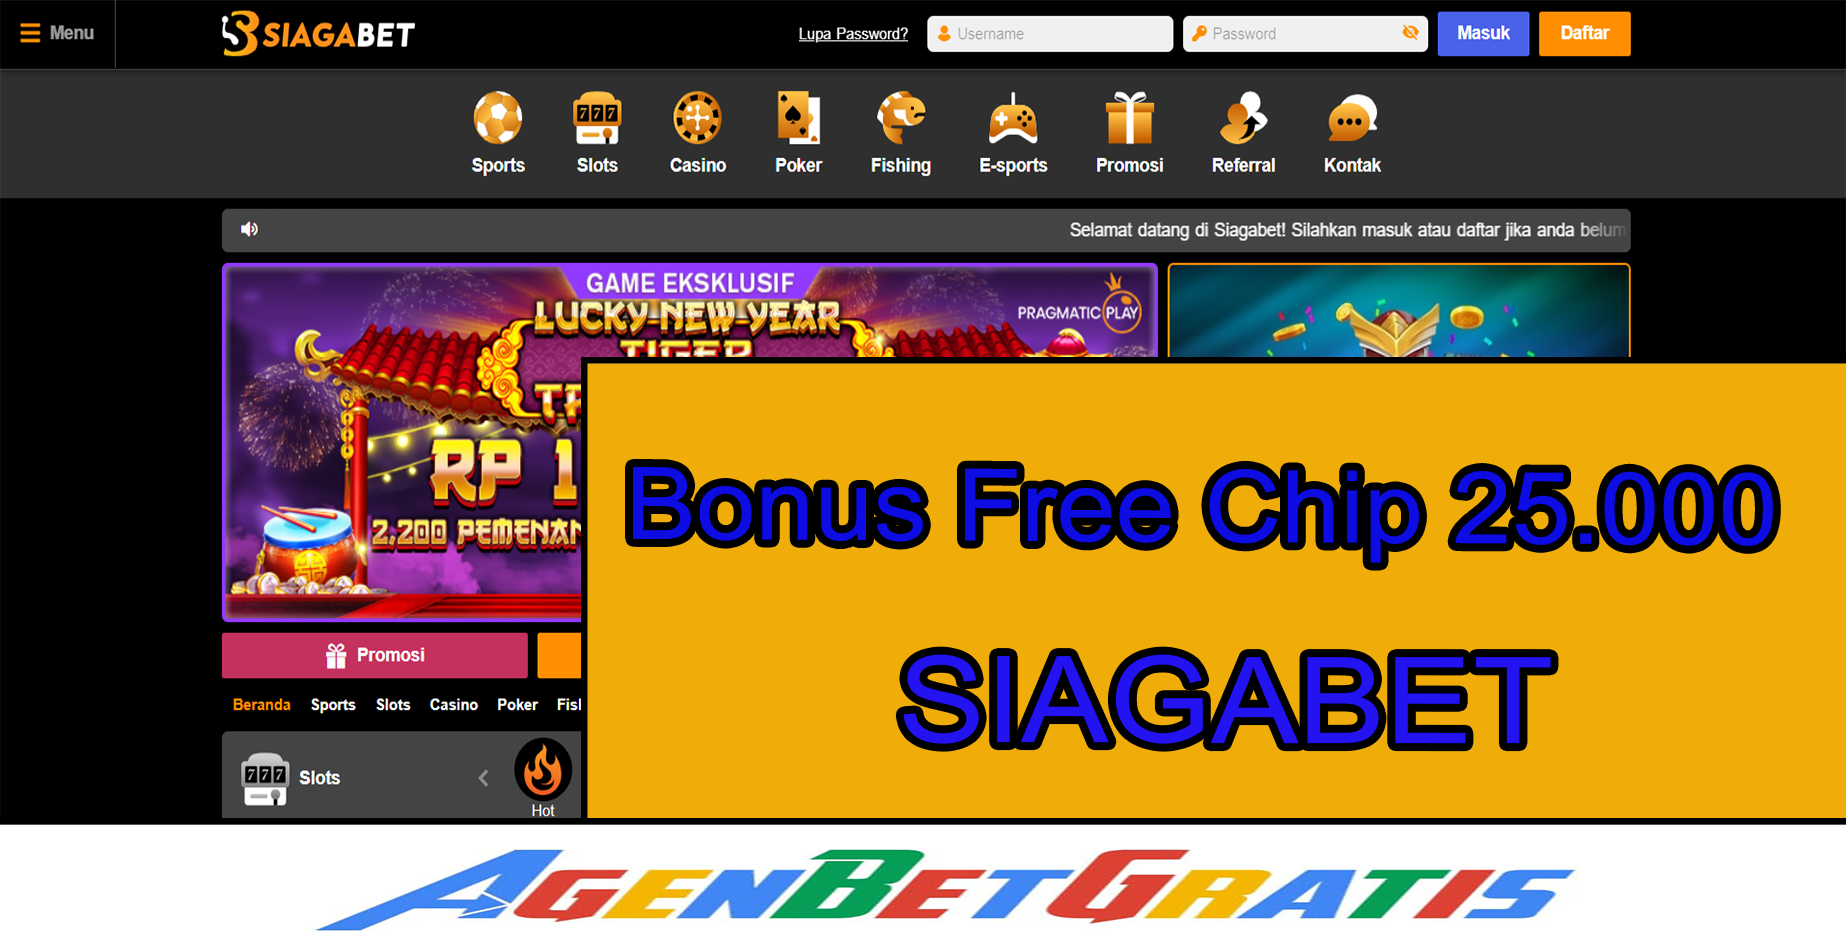 SIAGABET - Bonus Free Chip 25.000